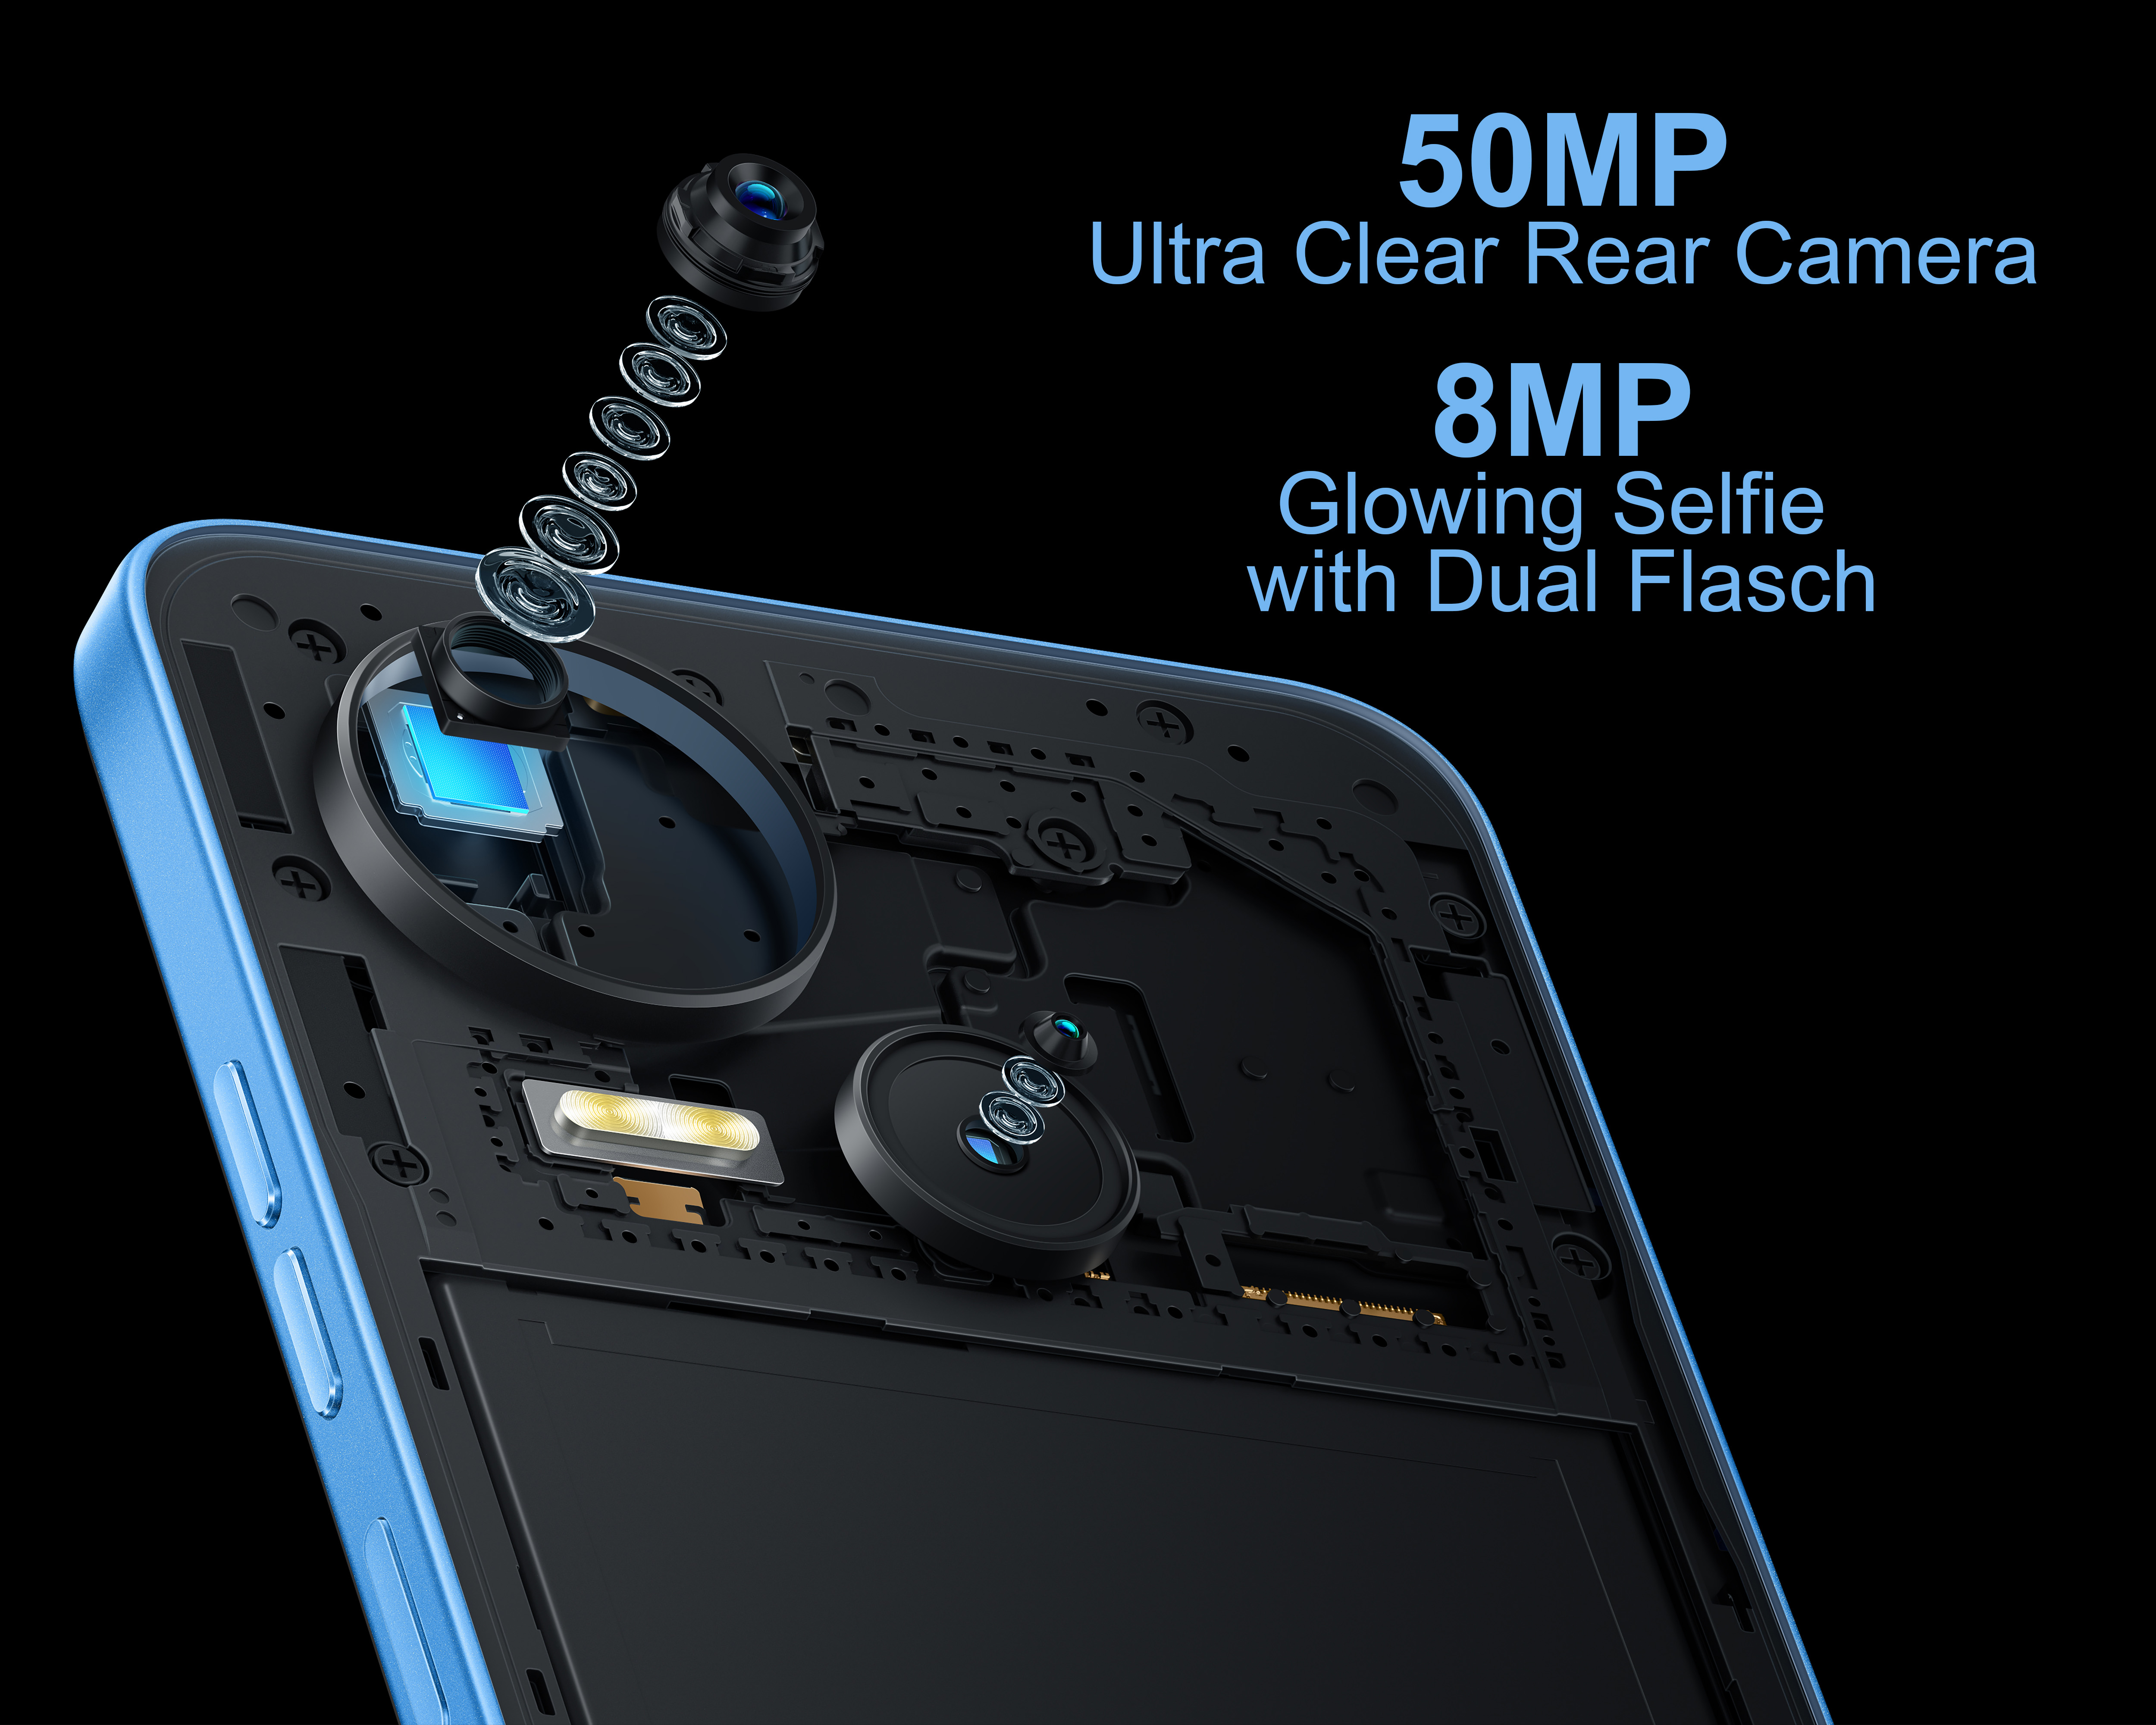 64 SIM TECNO GB Dual Spark Blau MOBILE 10 5G